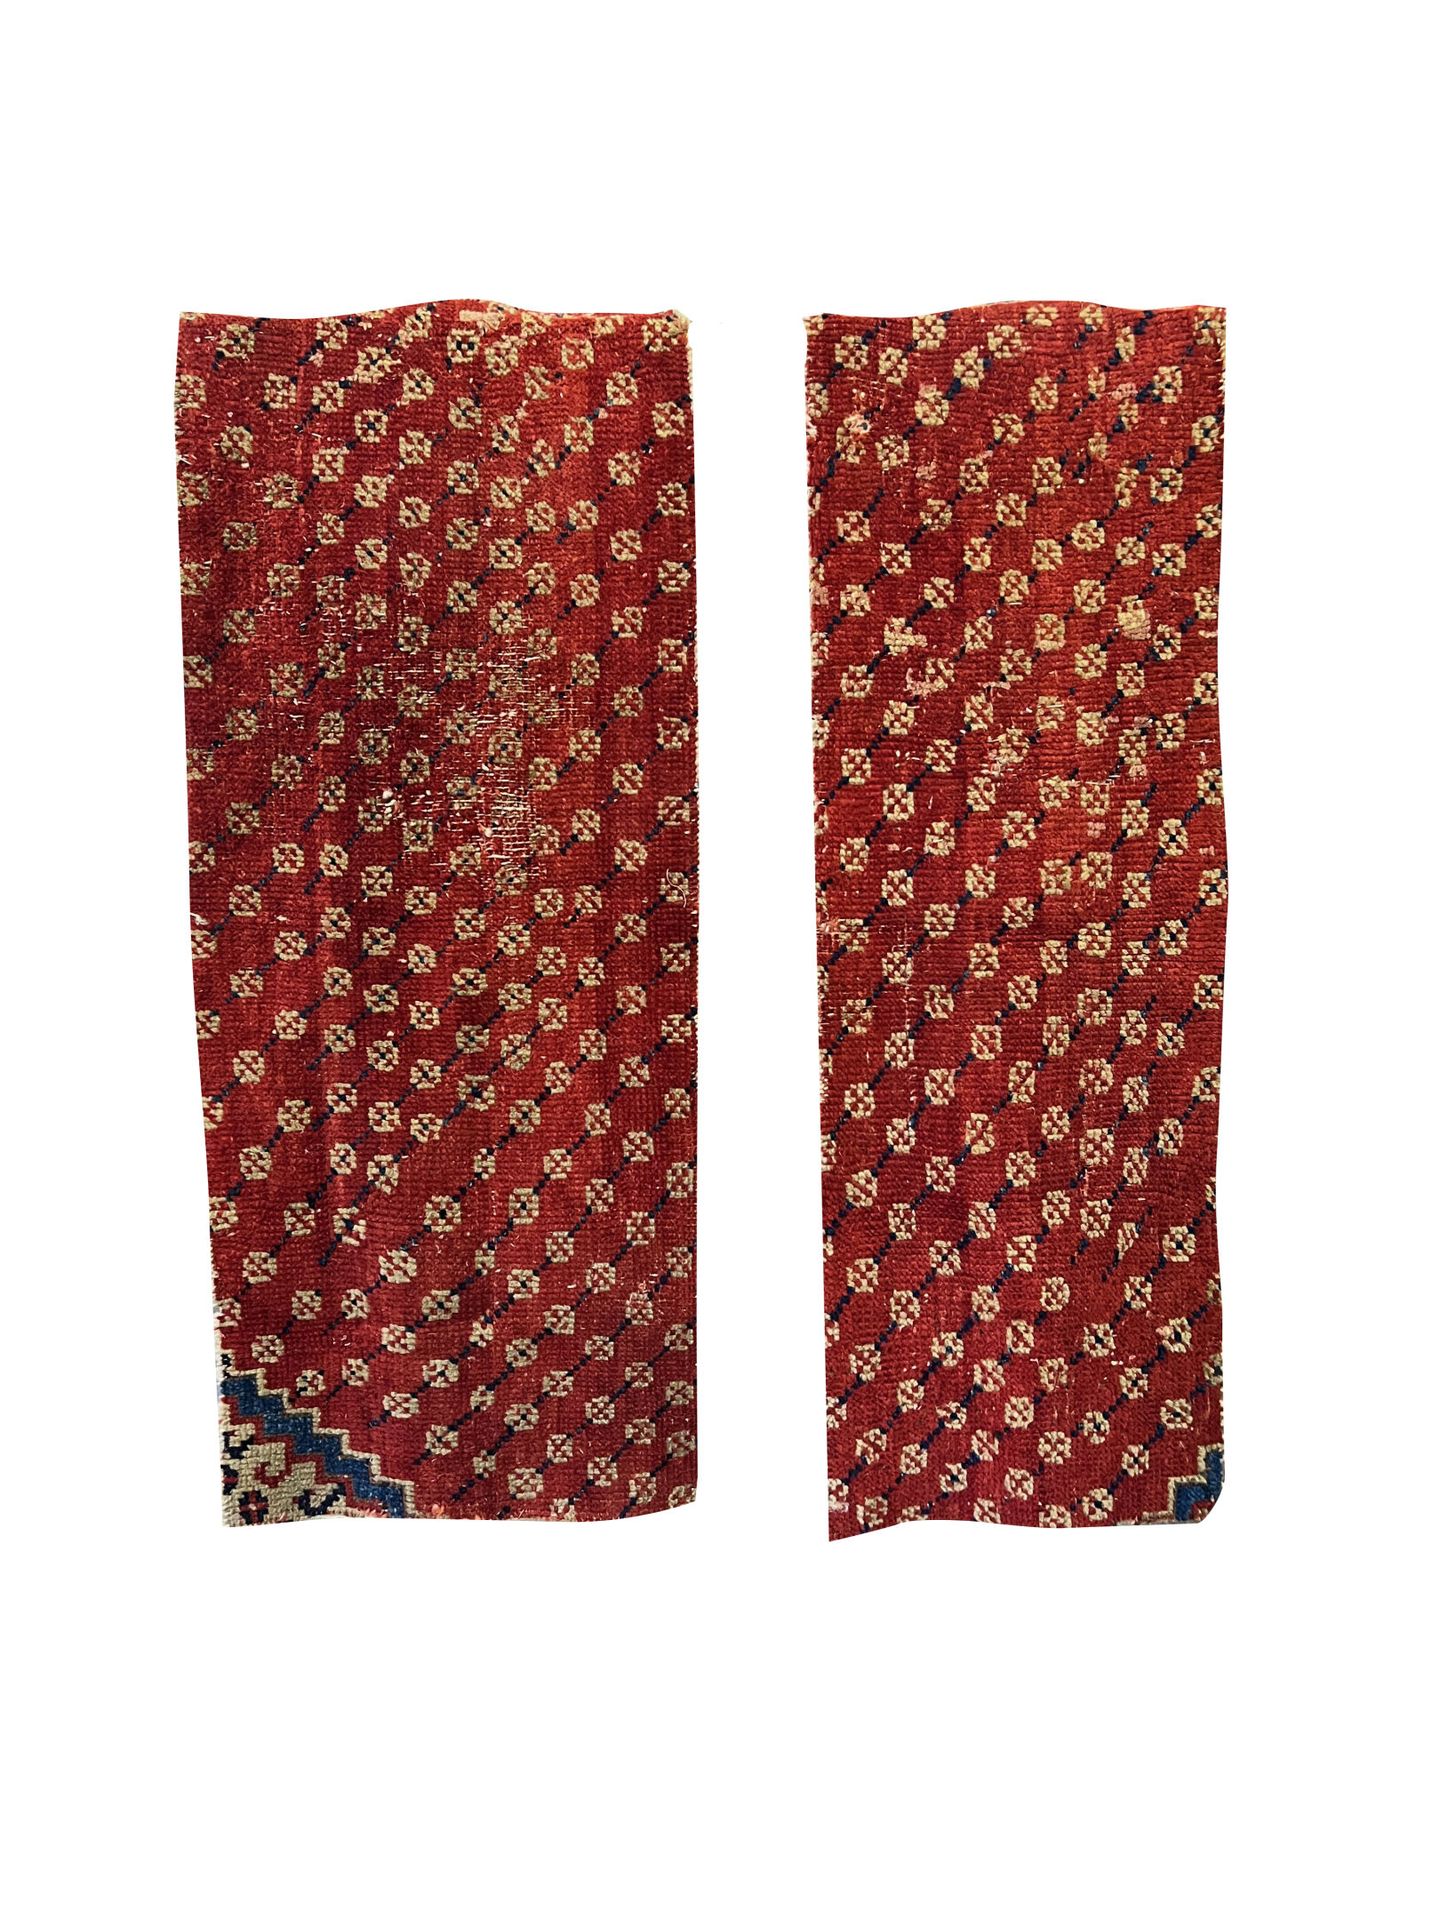 Null 东方的地毯

两块红色调的地毯碎片。饰有风格化的几何元素。

佩戴 - 长1.29 x 宽0.52厘米和长1.29 x 宽0.43厘米